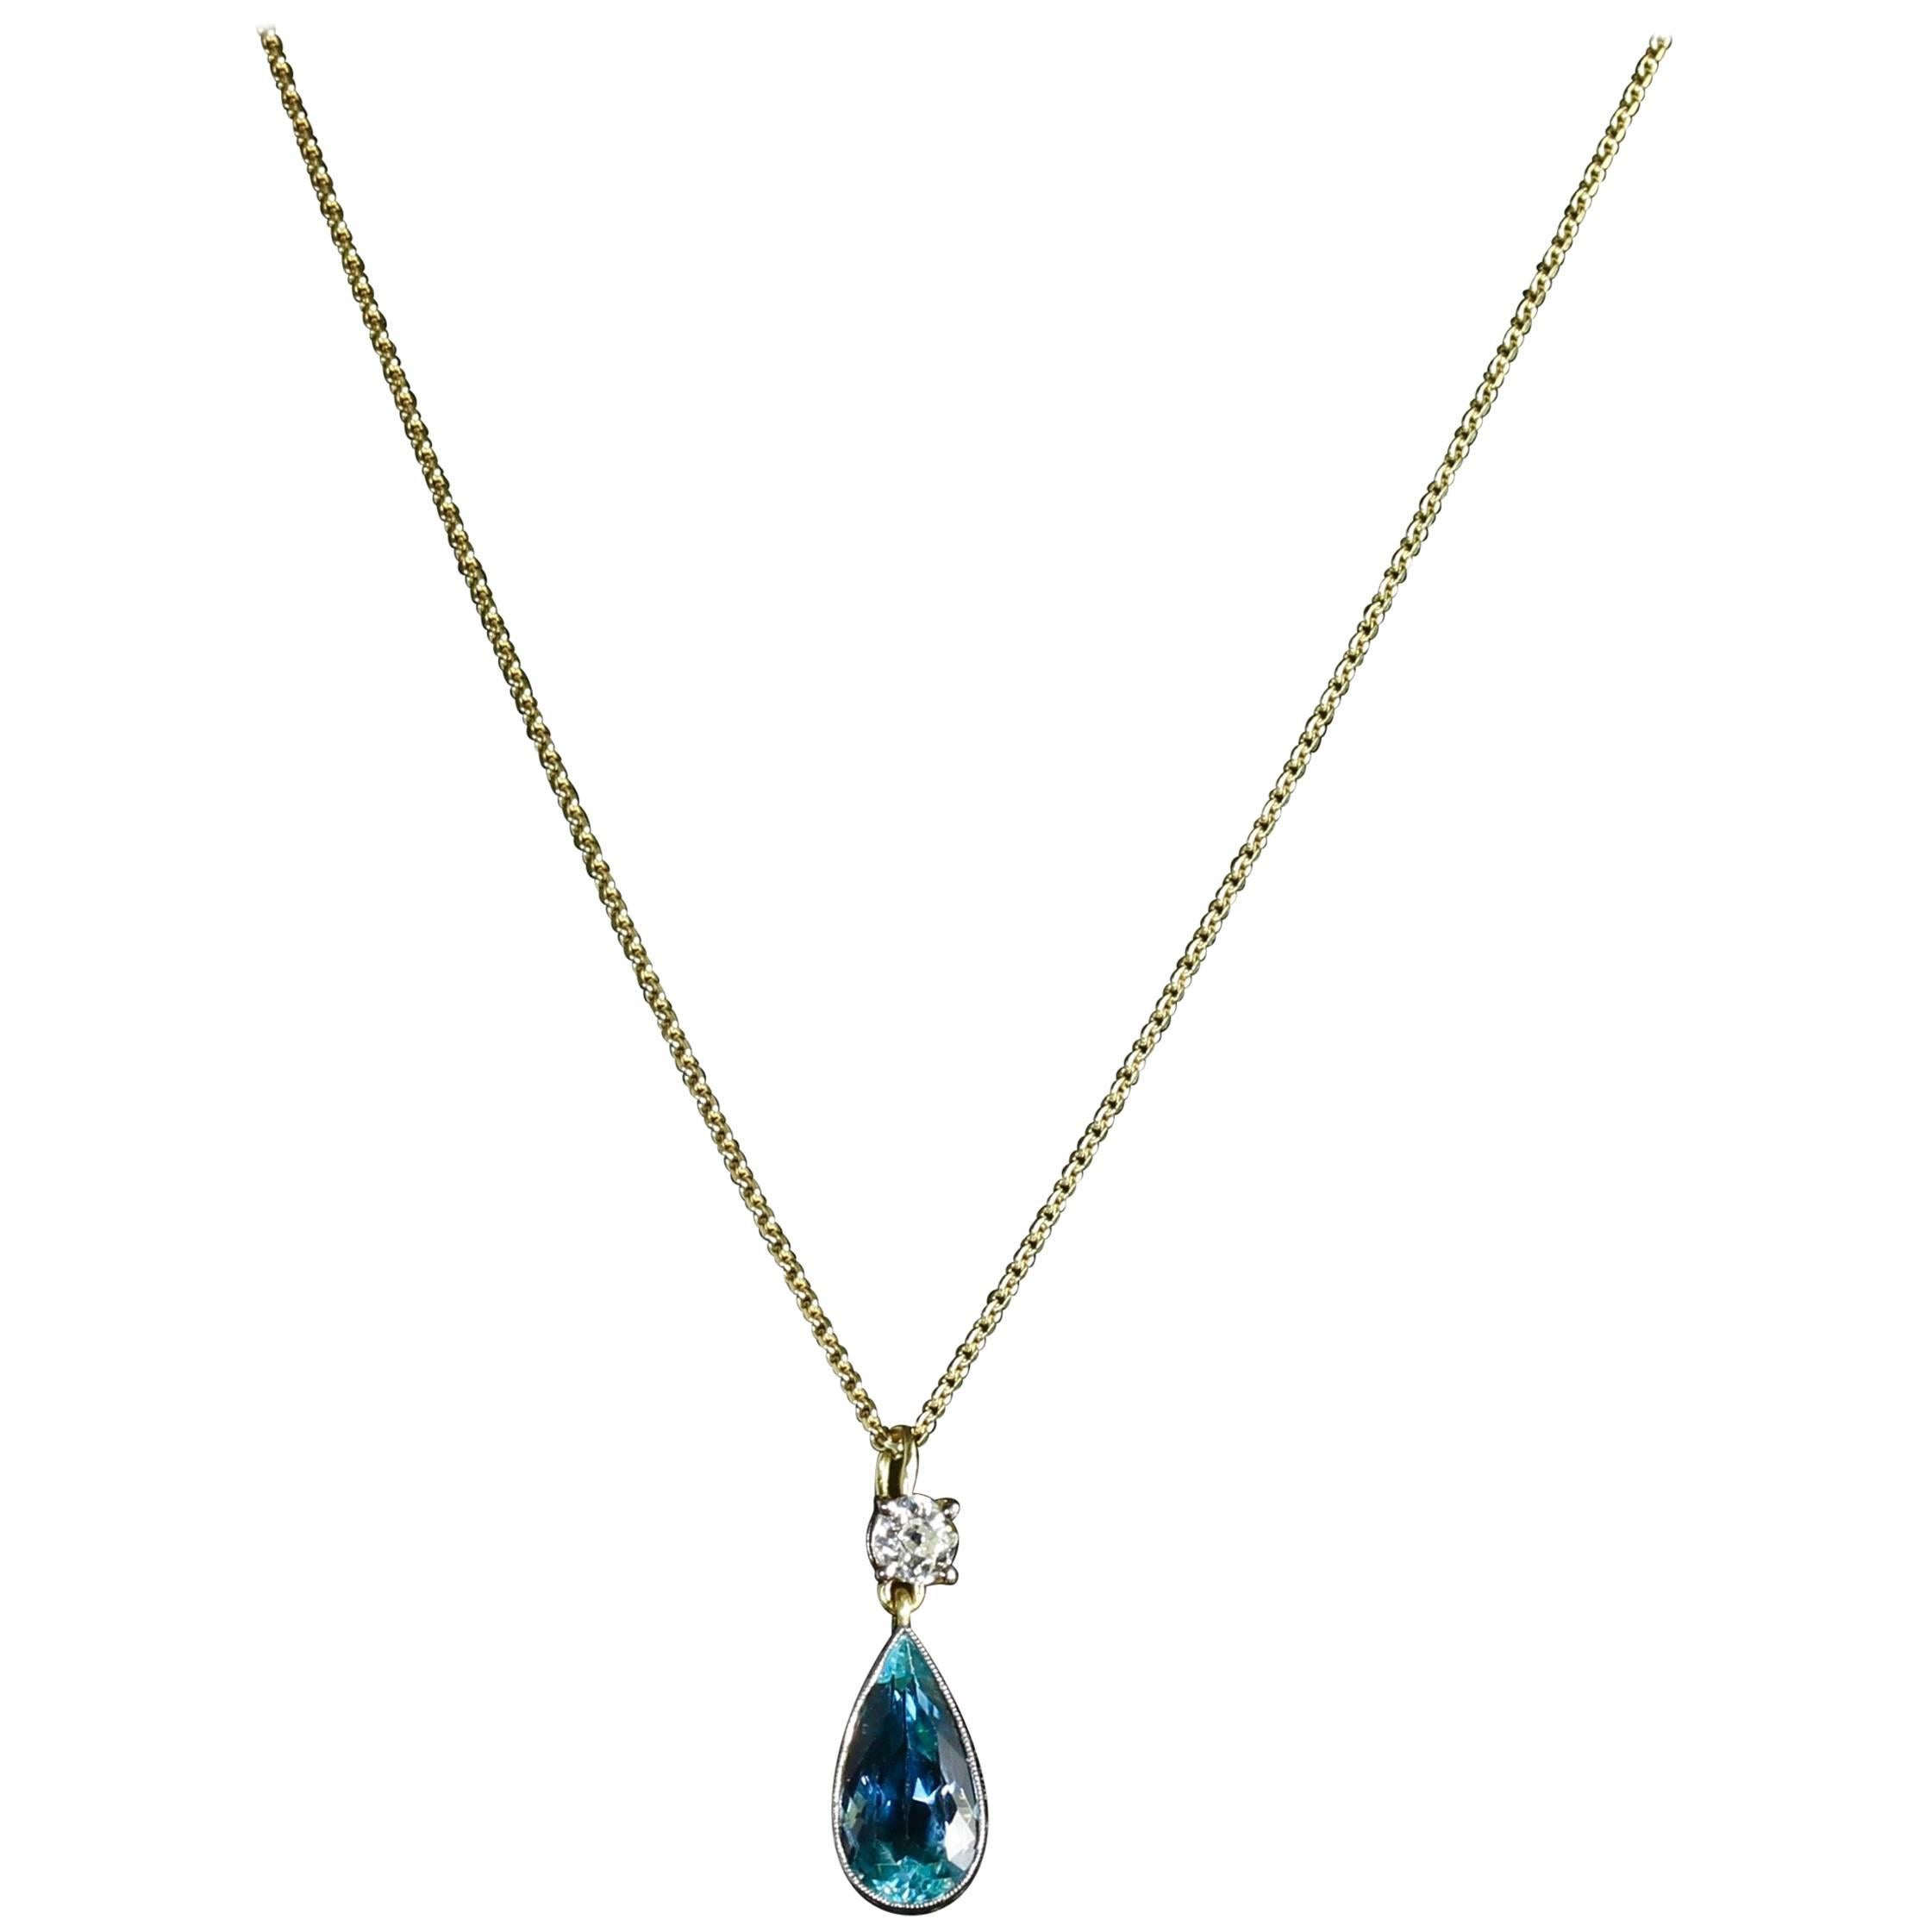 Antique Aquamarine Diamond Pendant Necklace